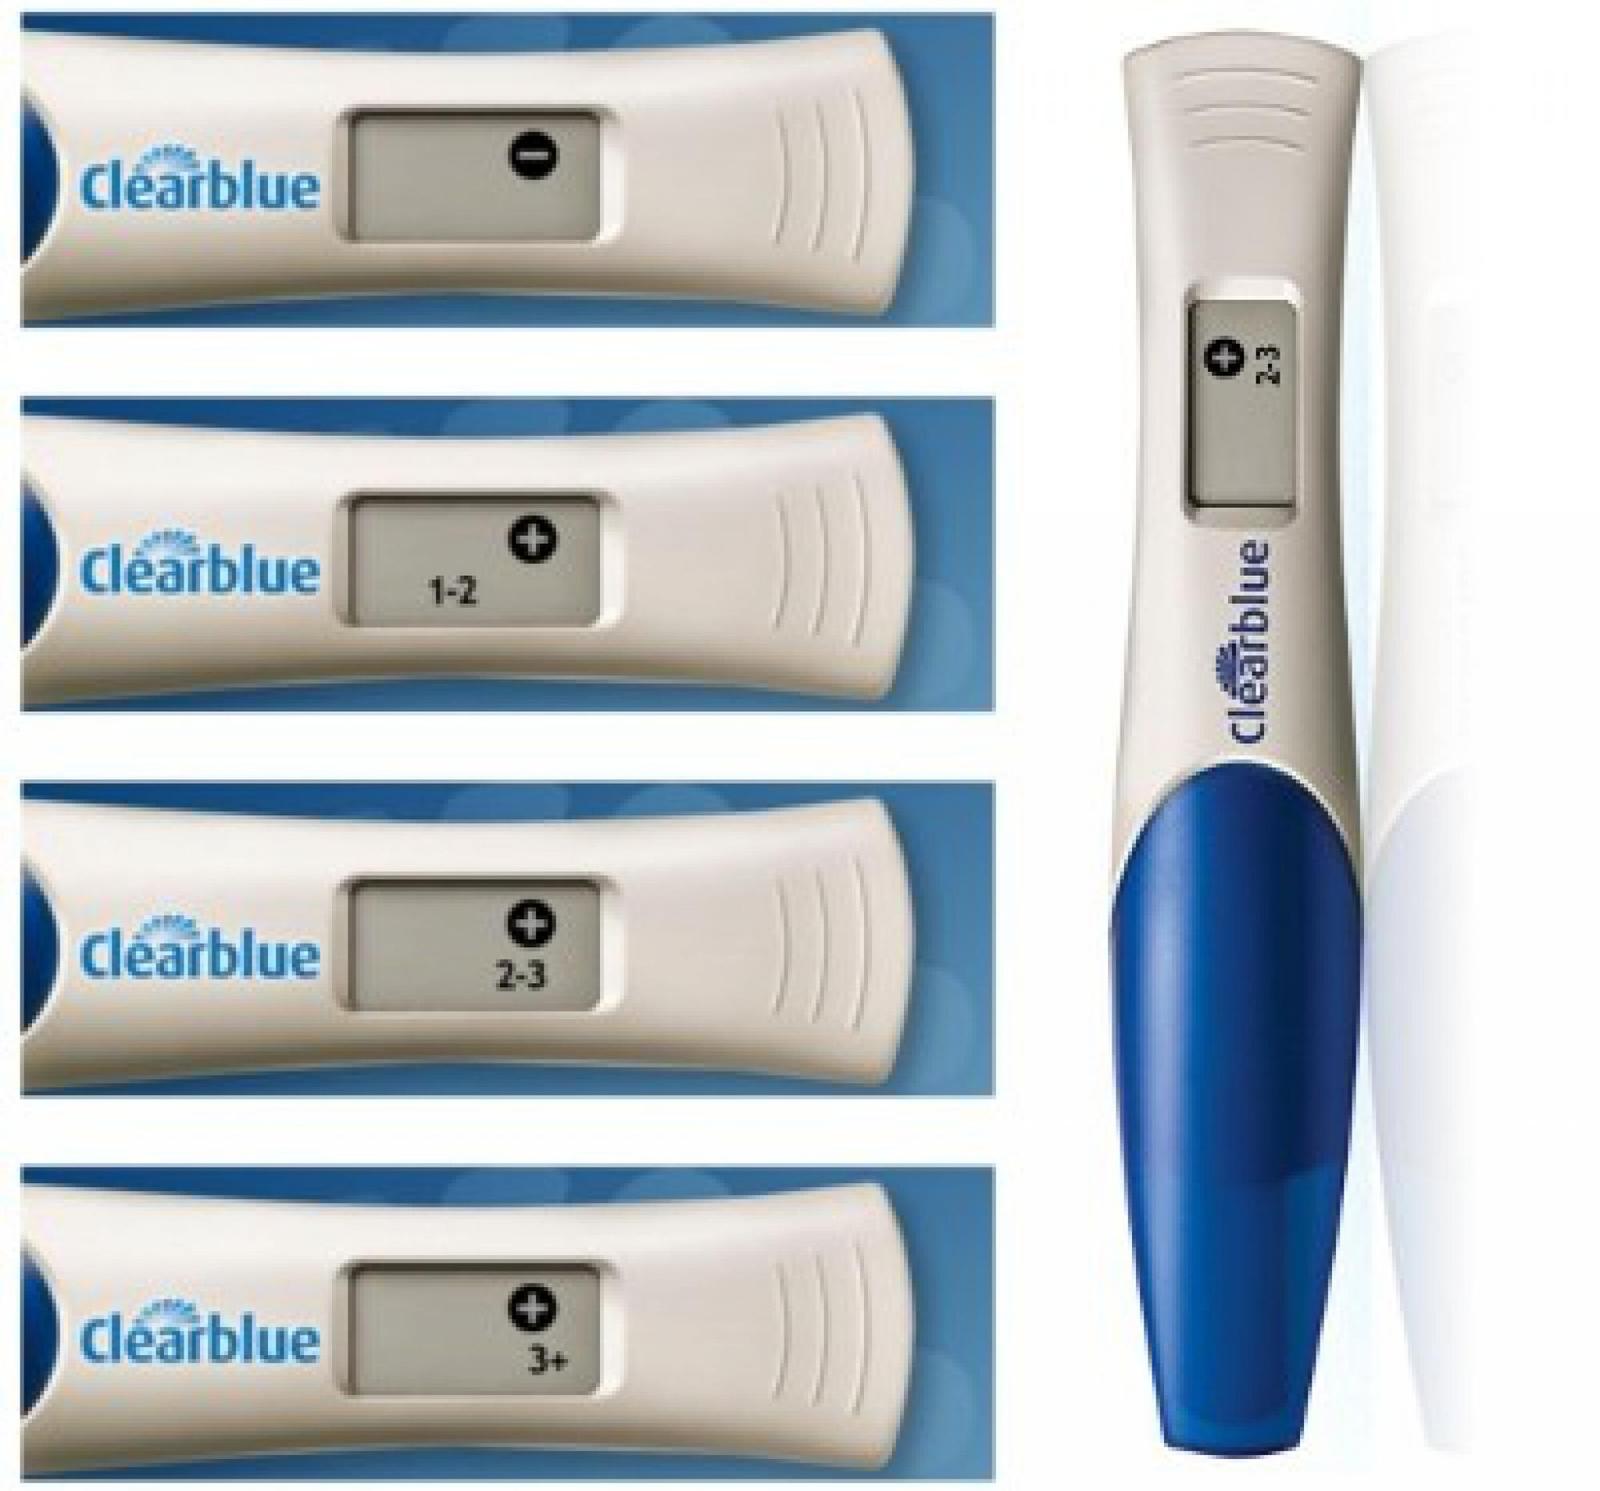 Тесты на беременность электронные результат. Тест клеар Блю. Тест на беременность Clearblue. Тест клеар Блю цифровой. Clearblue 3+.